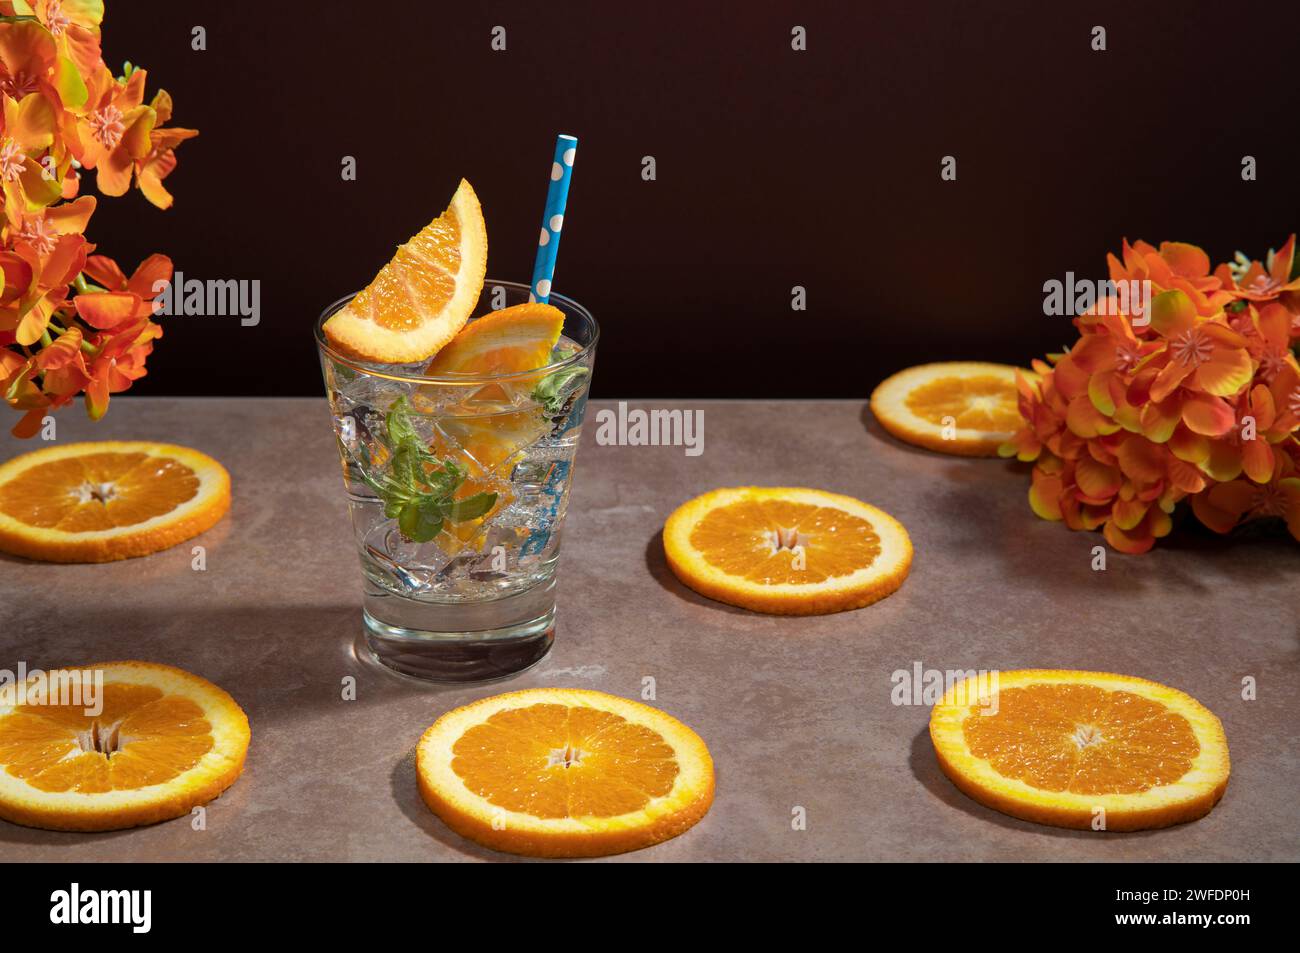 Cocktail en verre rempli de glace et de feuilles de menthe garnies de tranche d'orange et sorbet sur une table en céramique avec tranches d'orange contre rouge foncé Banque D'Images